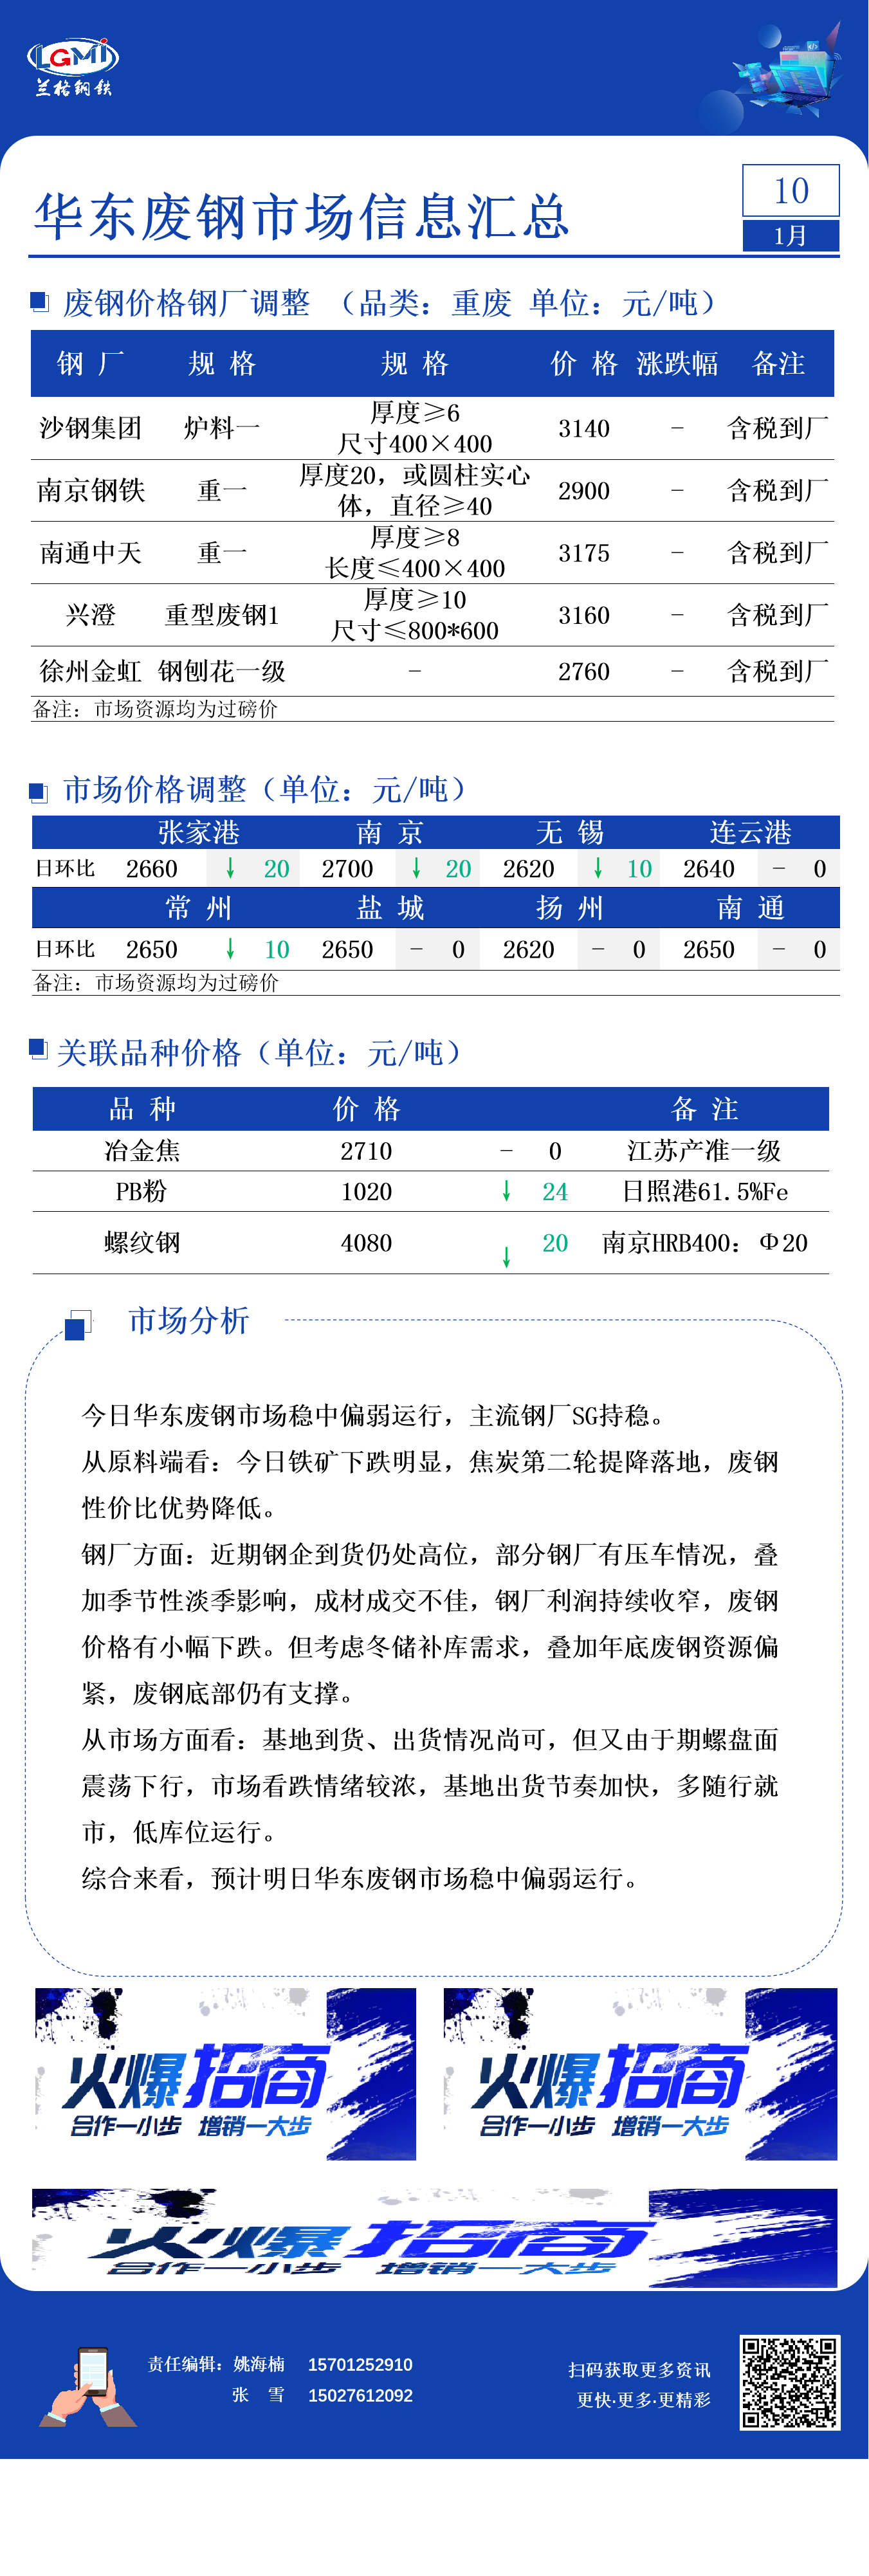 1月10日华东废钢市场信息汇总